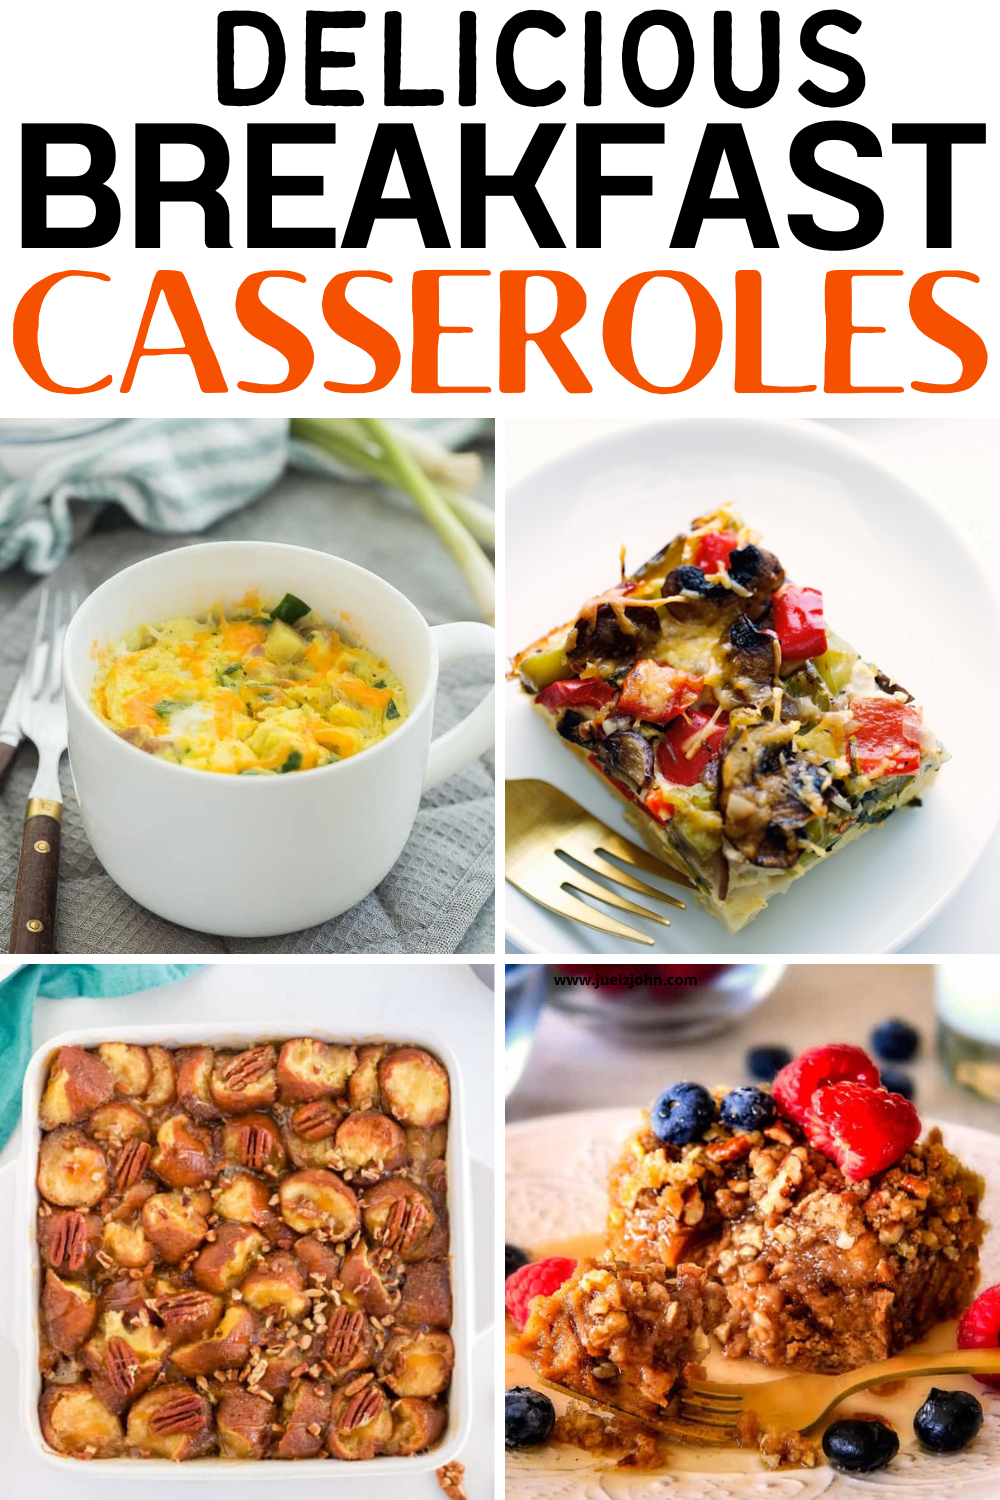 19 breakfast casserole recipes that are heavenly - juelzjohn